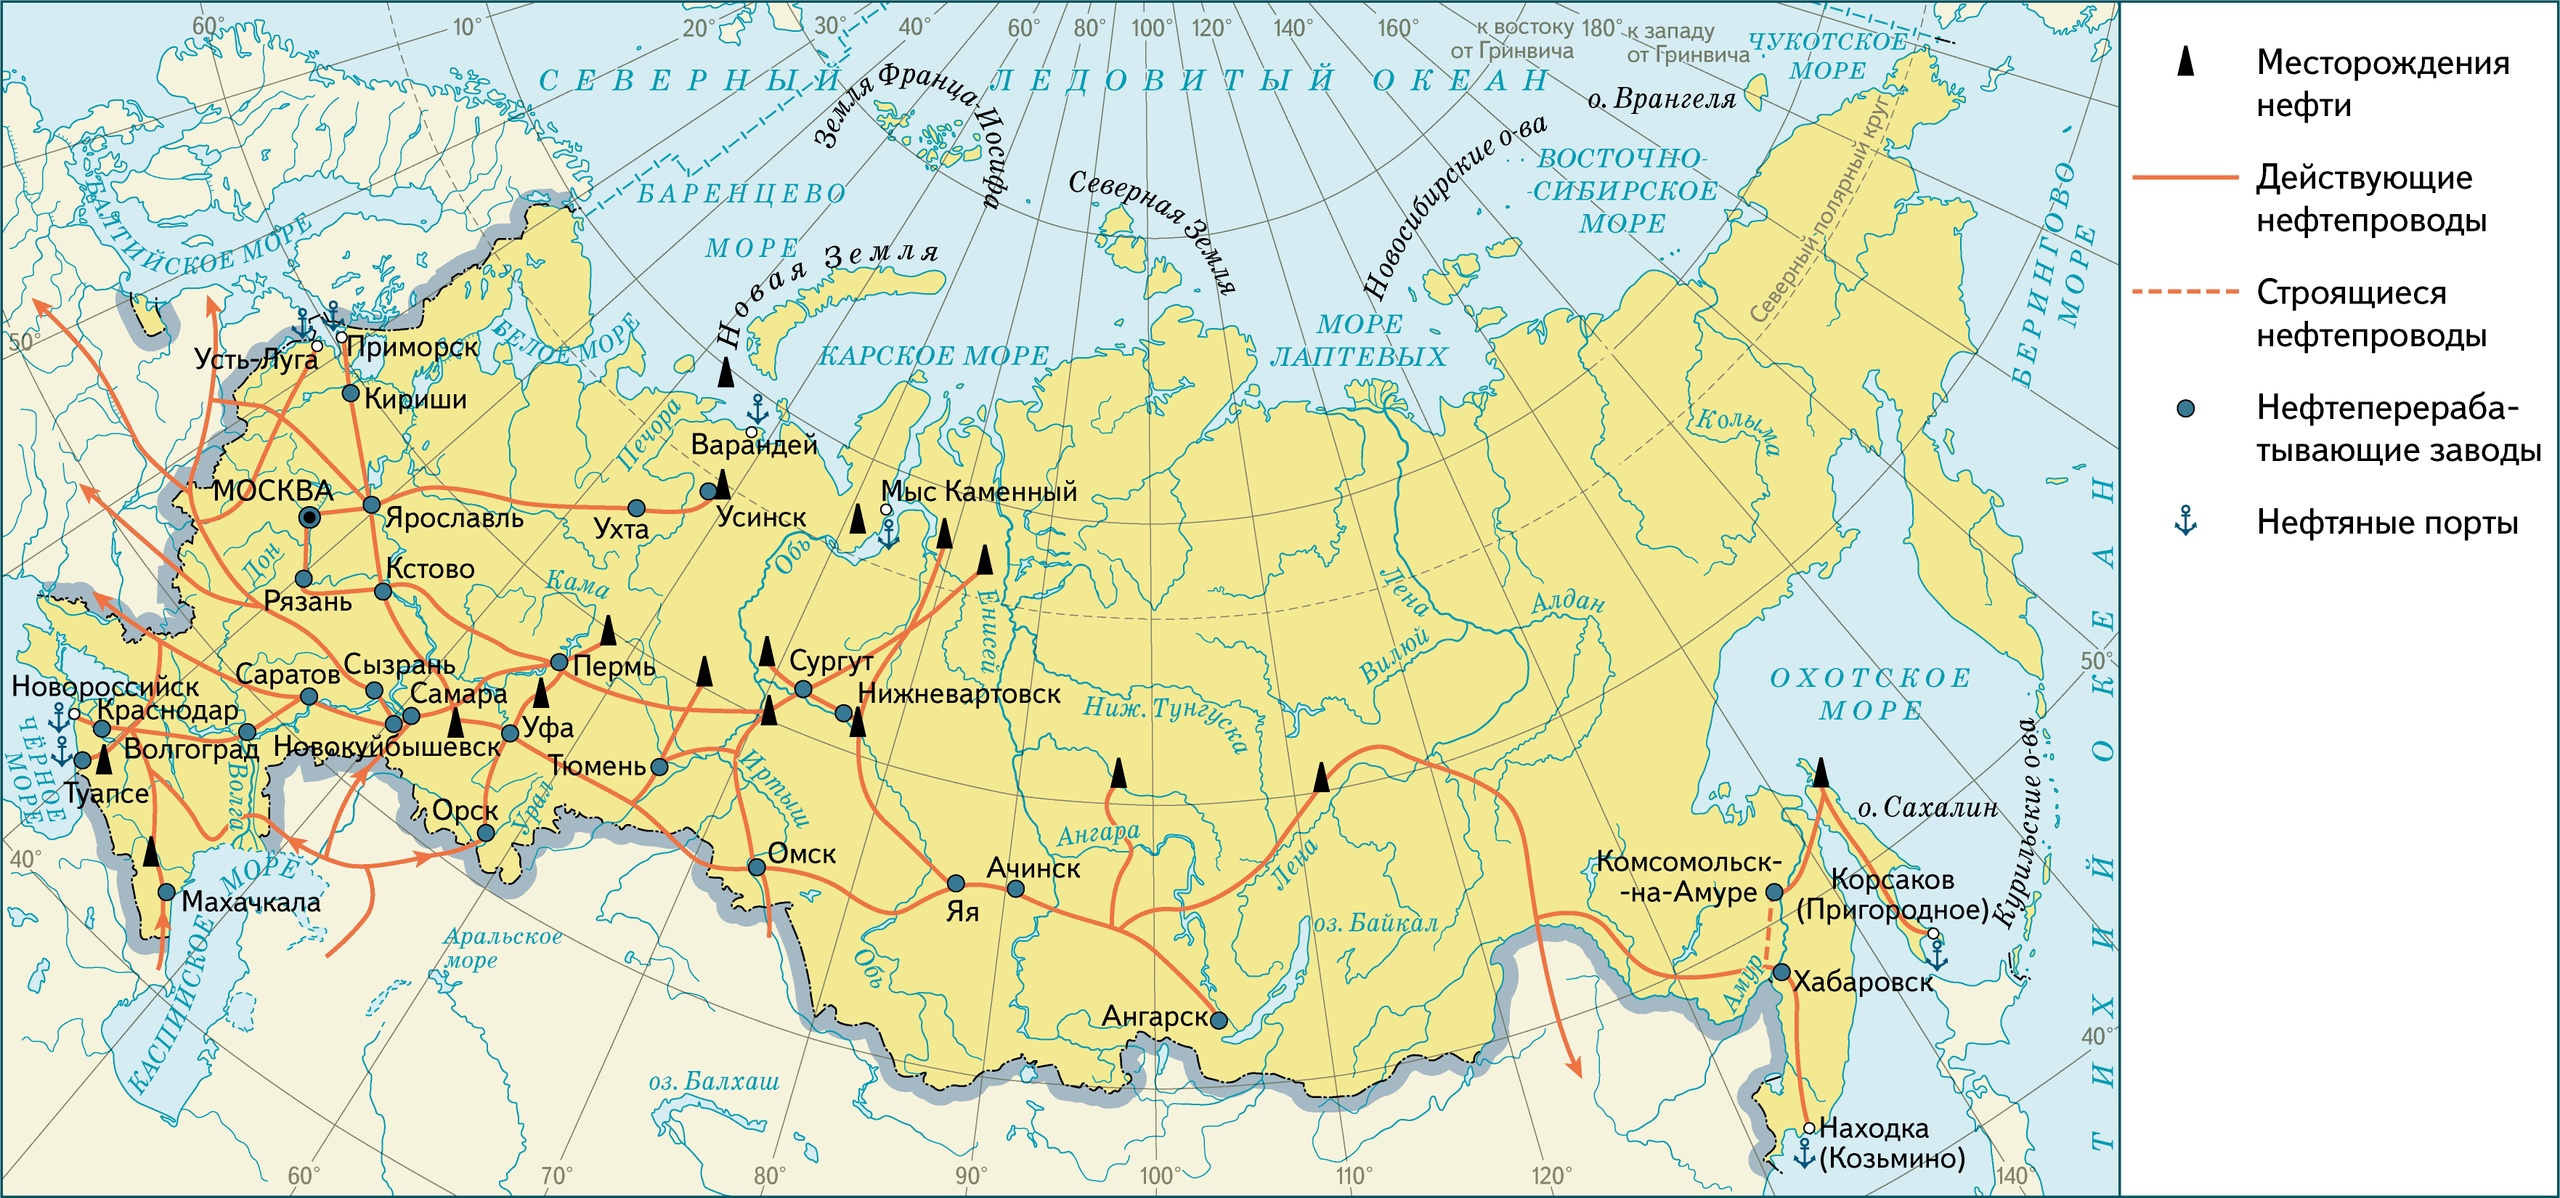 Нефтепроводы и газопроводы России на 2023